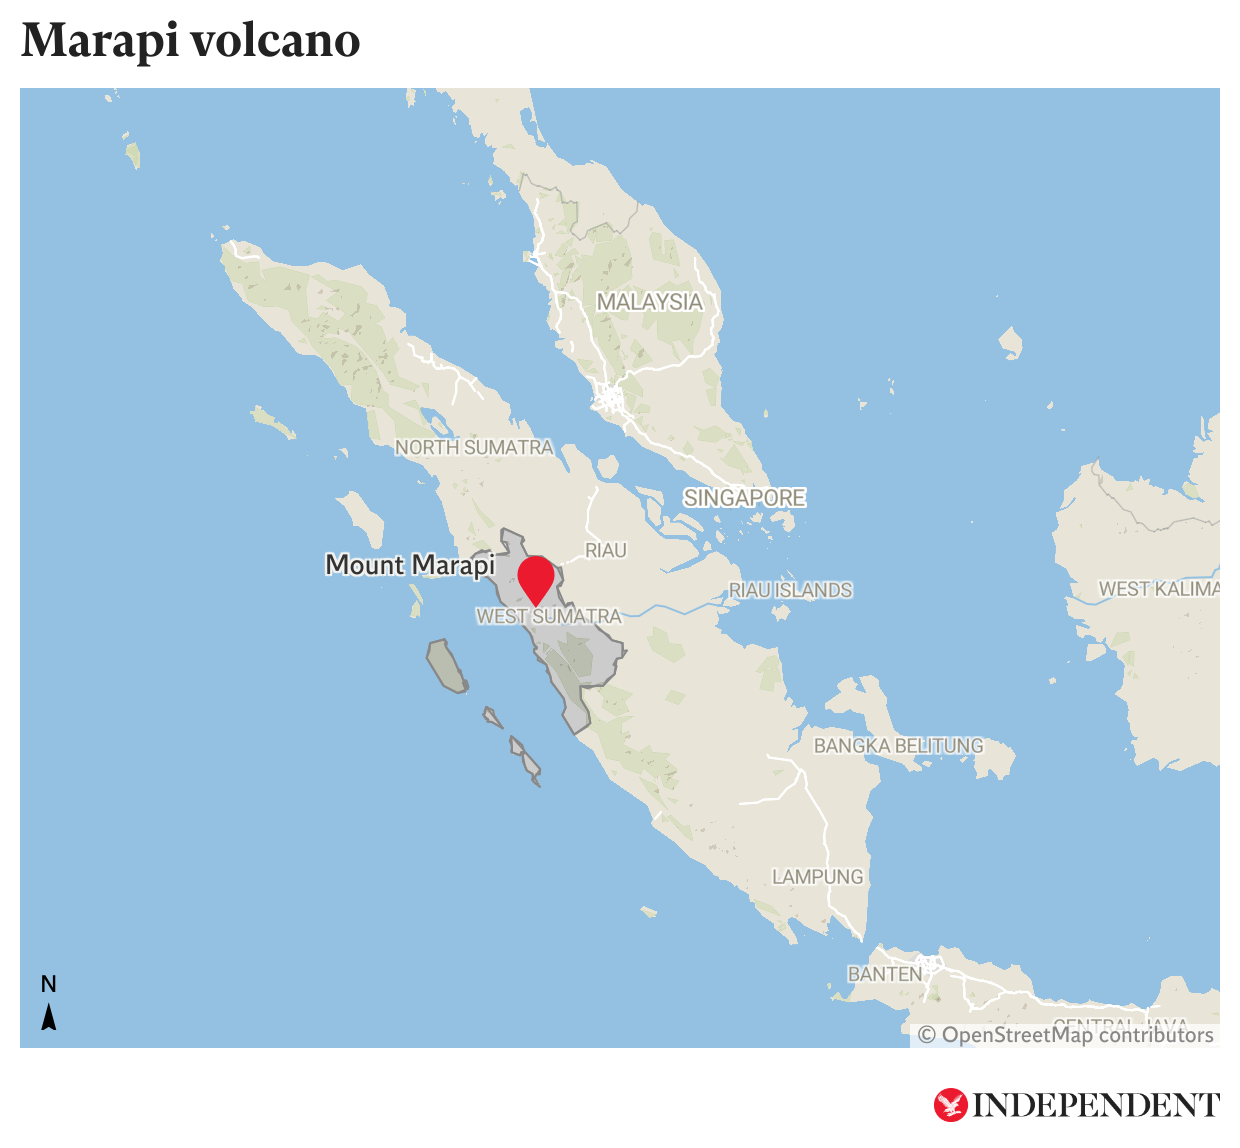 The Marapi Volcano in West Sumatra, Indonesia